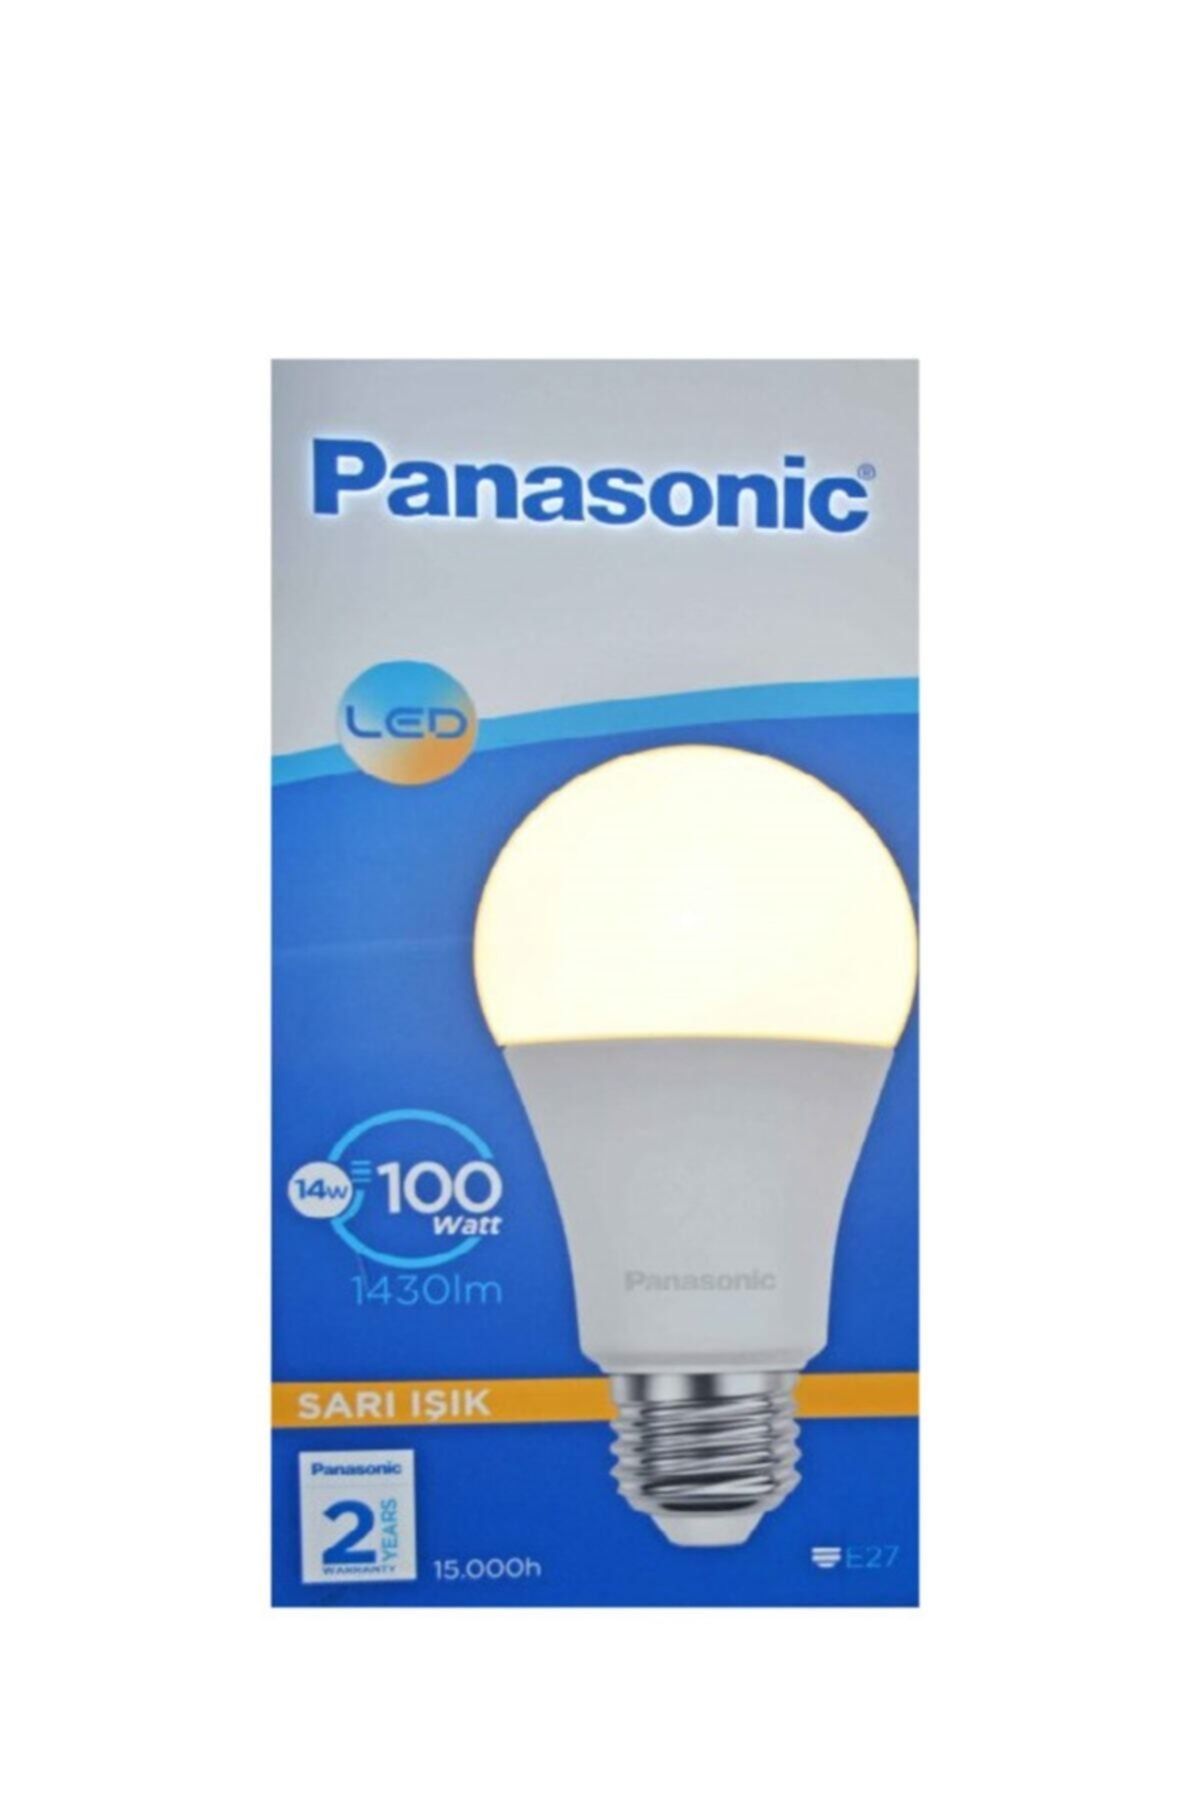 Panasonic Led Lamba 14w -100w E27 1430 Lümen Sarı Işık Akkurtlarr Elektrik